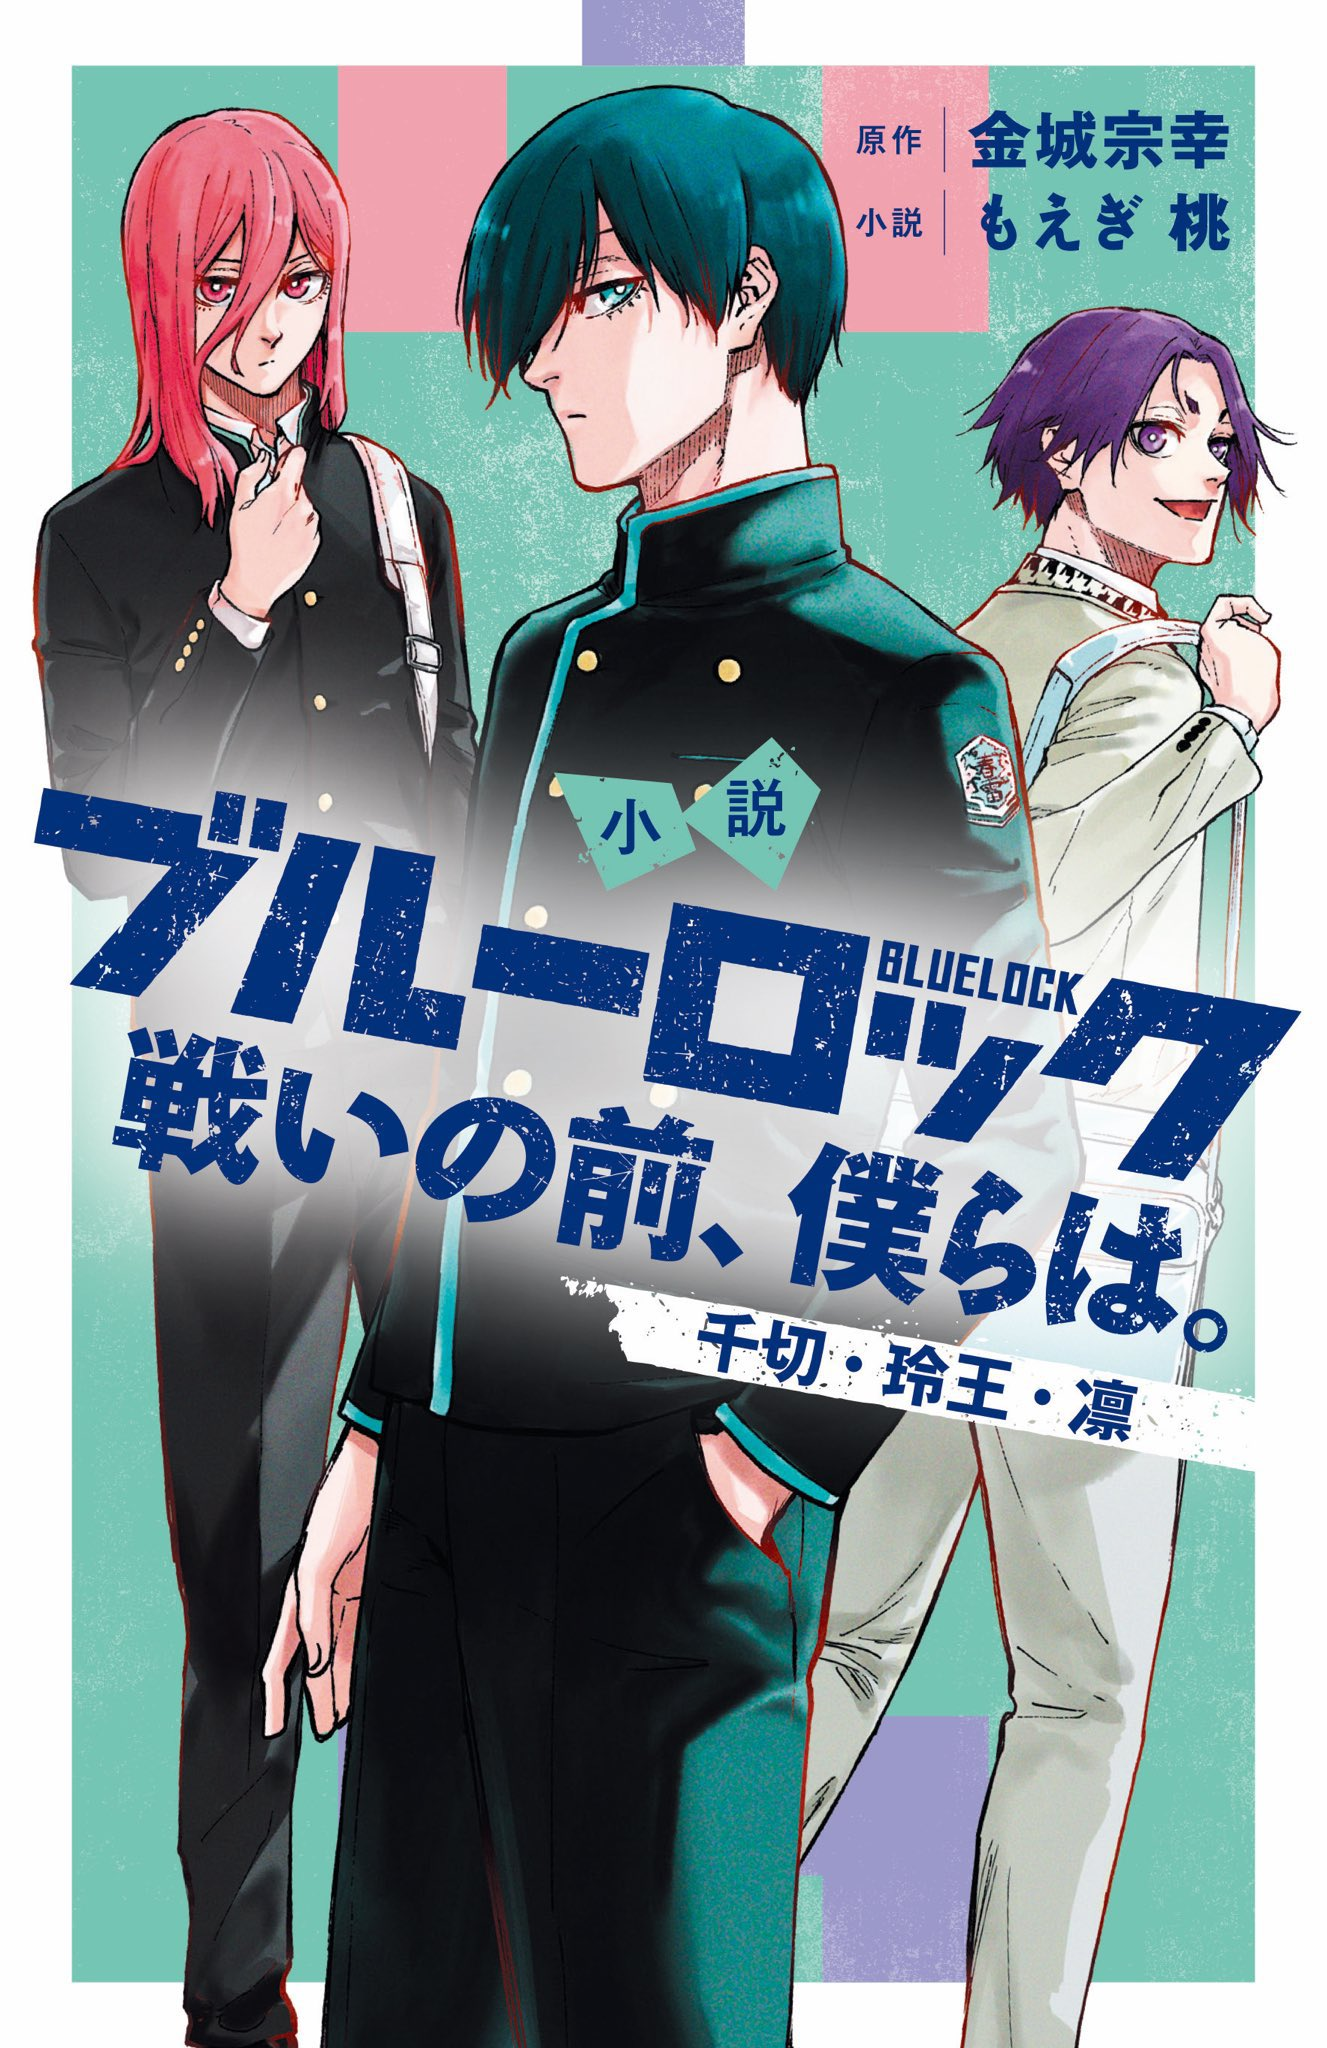 Read Blue Lock Episode Nagi Manga on Mangakakalot